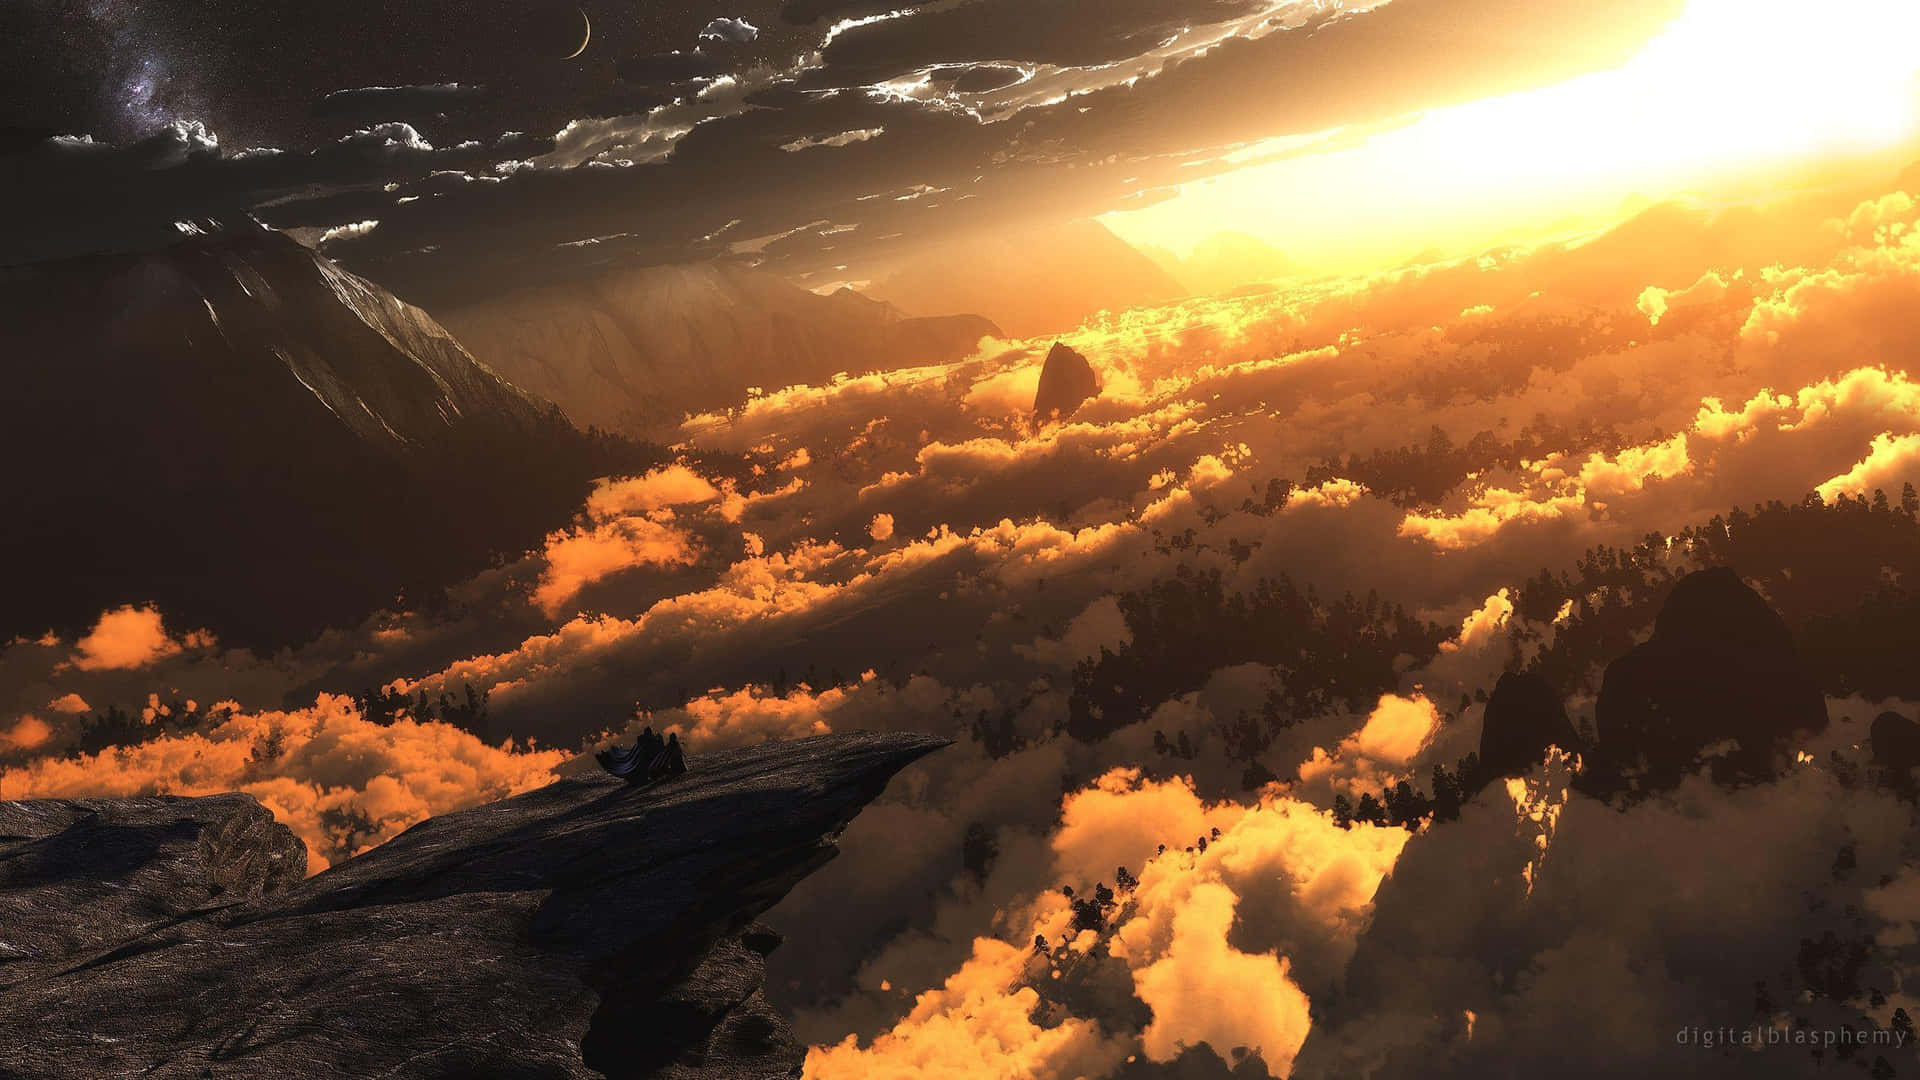 Einwunderschönes Bild Von Der Sonne, Die Über Einem Berg Aufgeht.